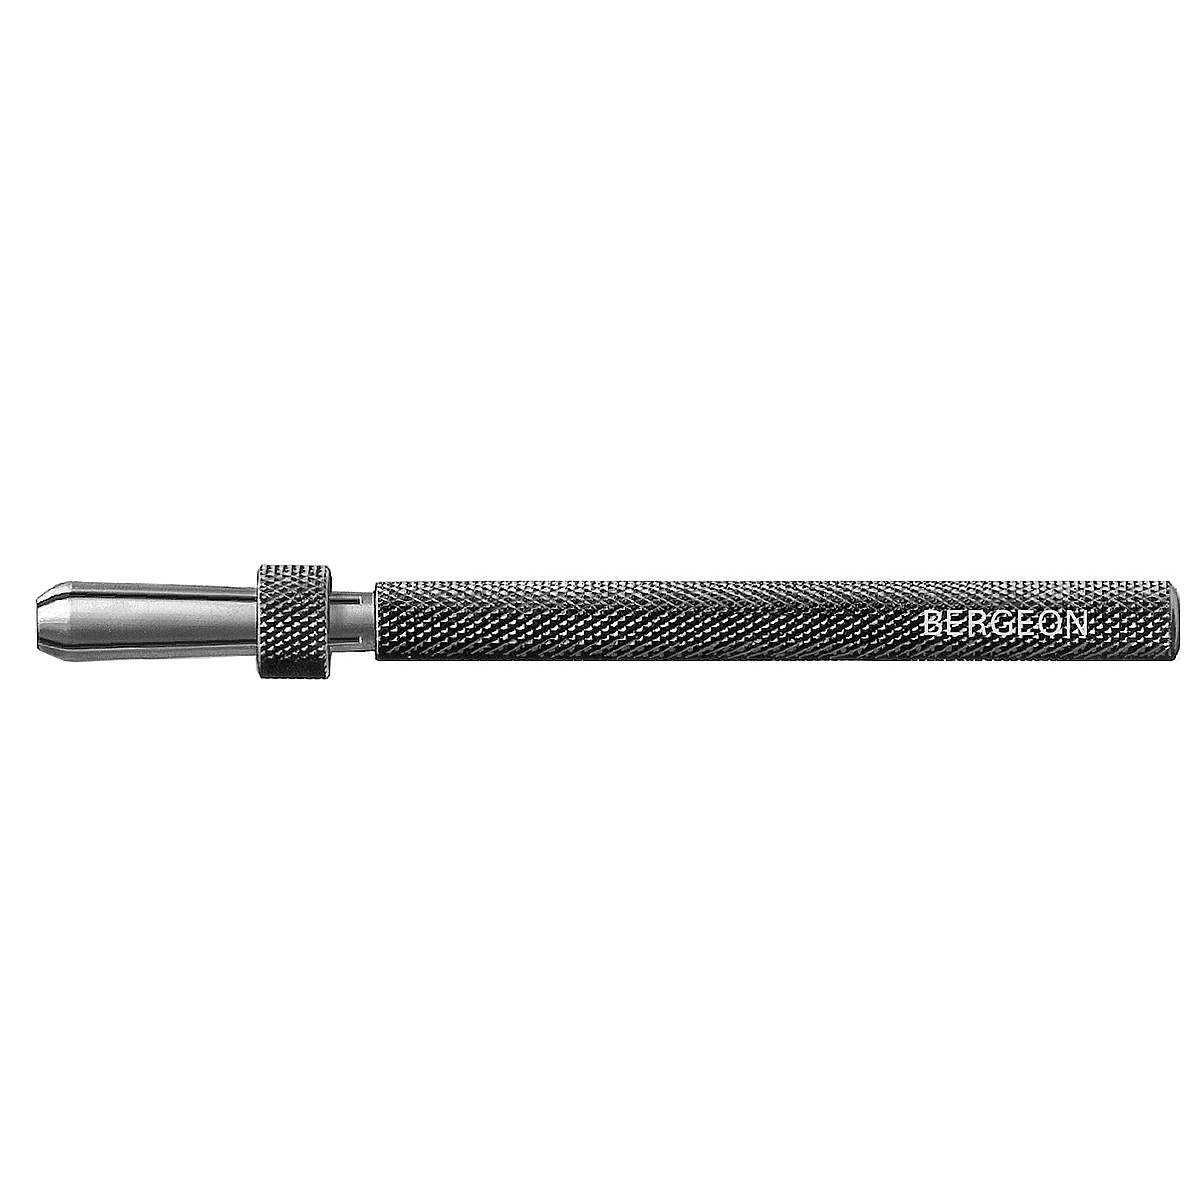 Bergeon 30432 mandrin de serrage à coulant, ouverture 0 - 1,5 mm, longueur 110 mm